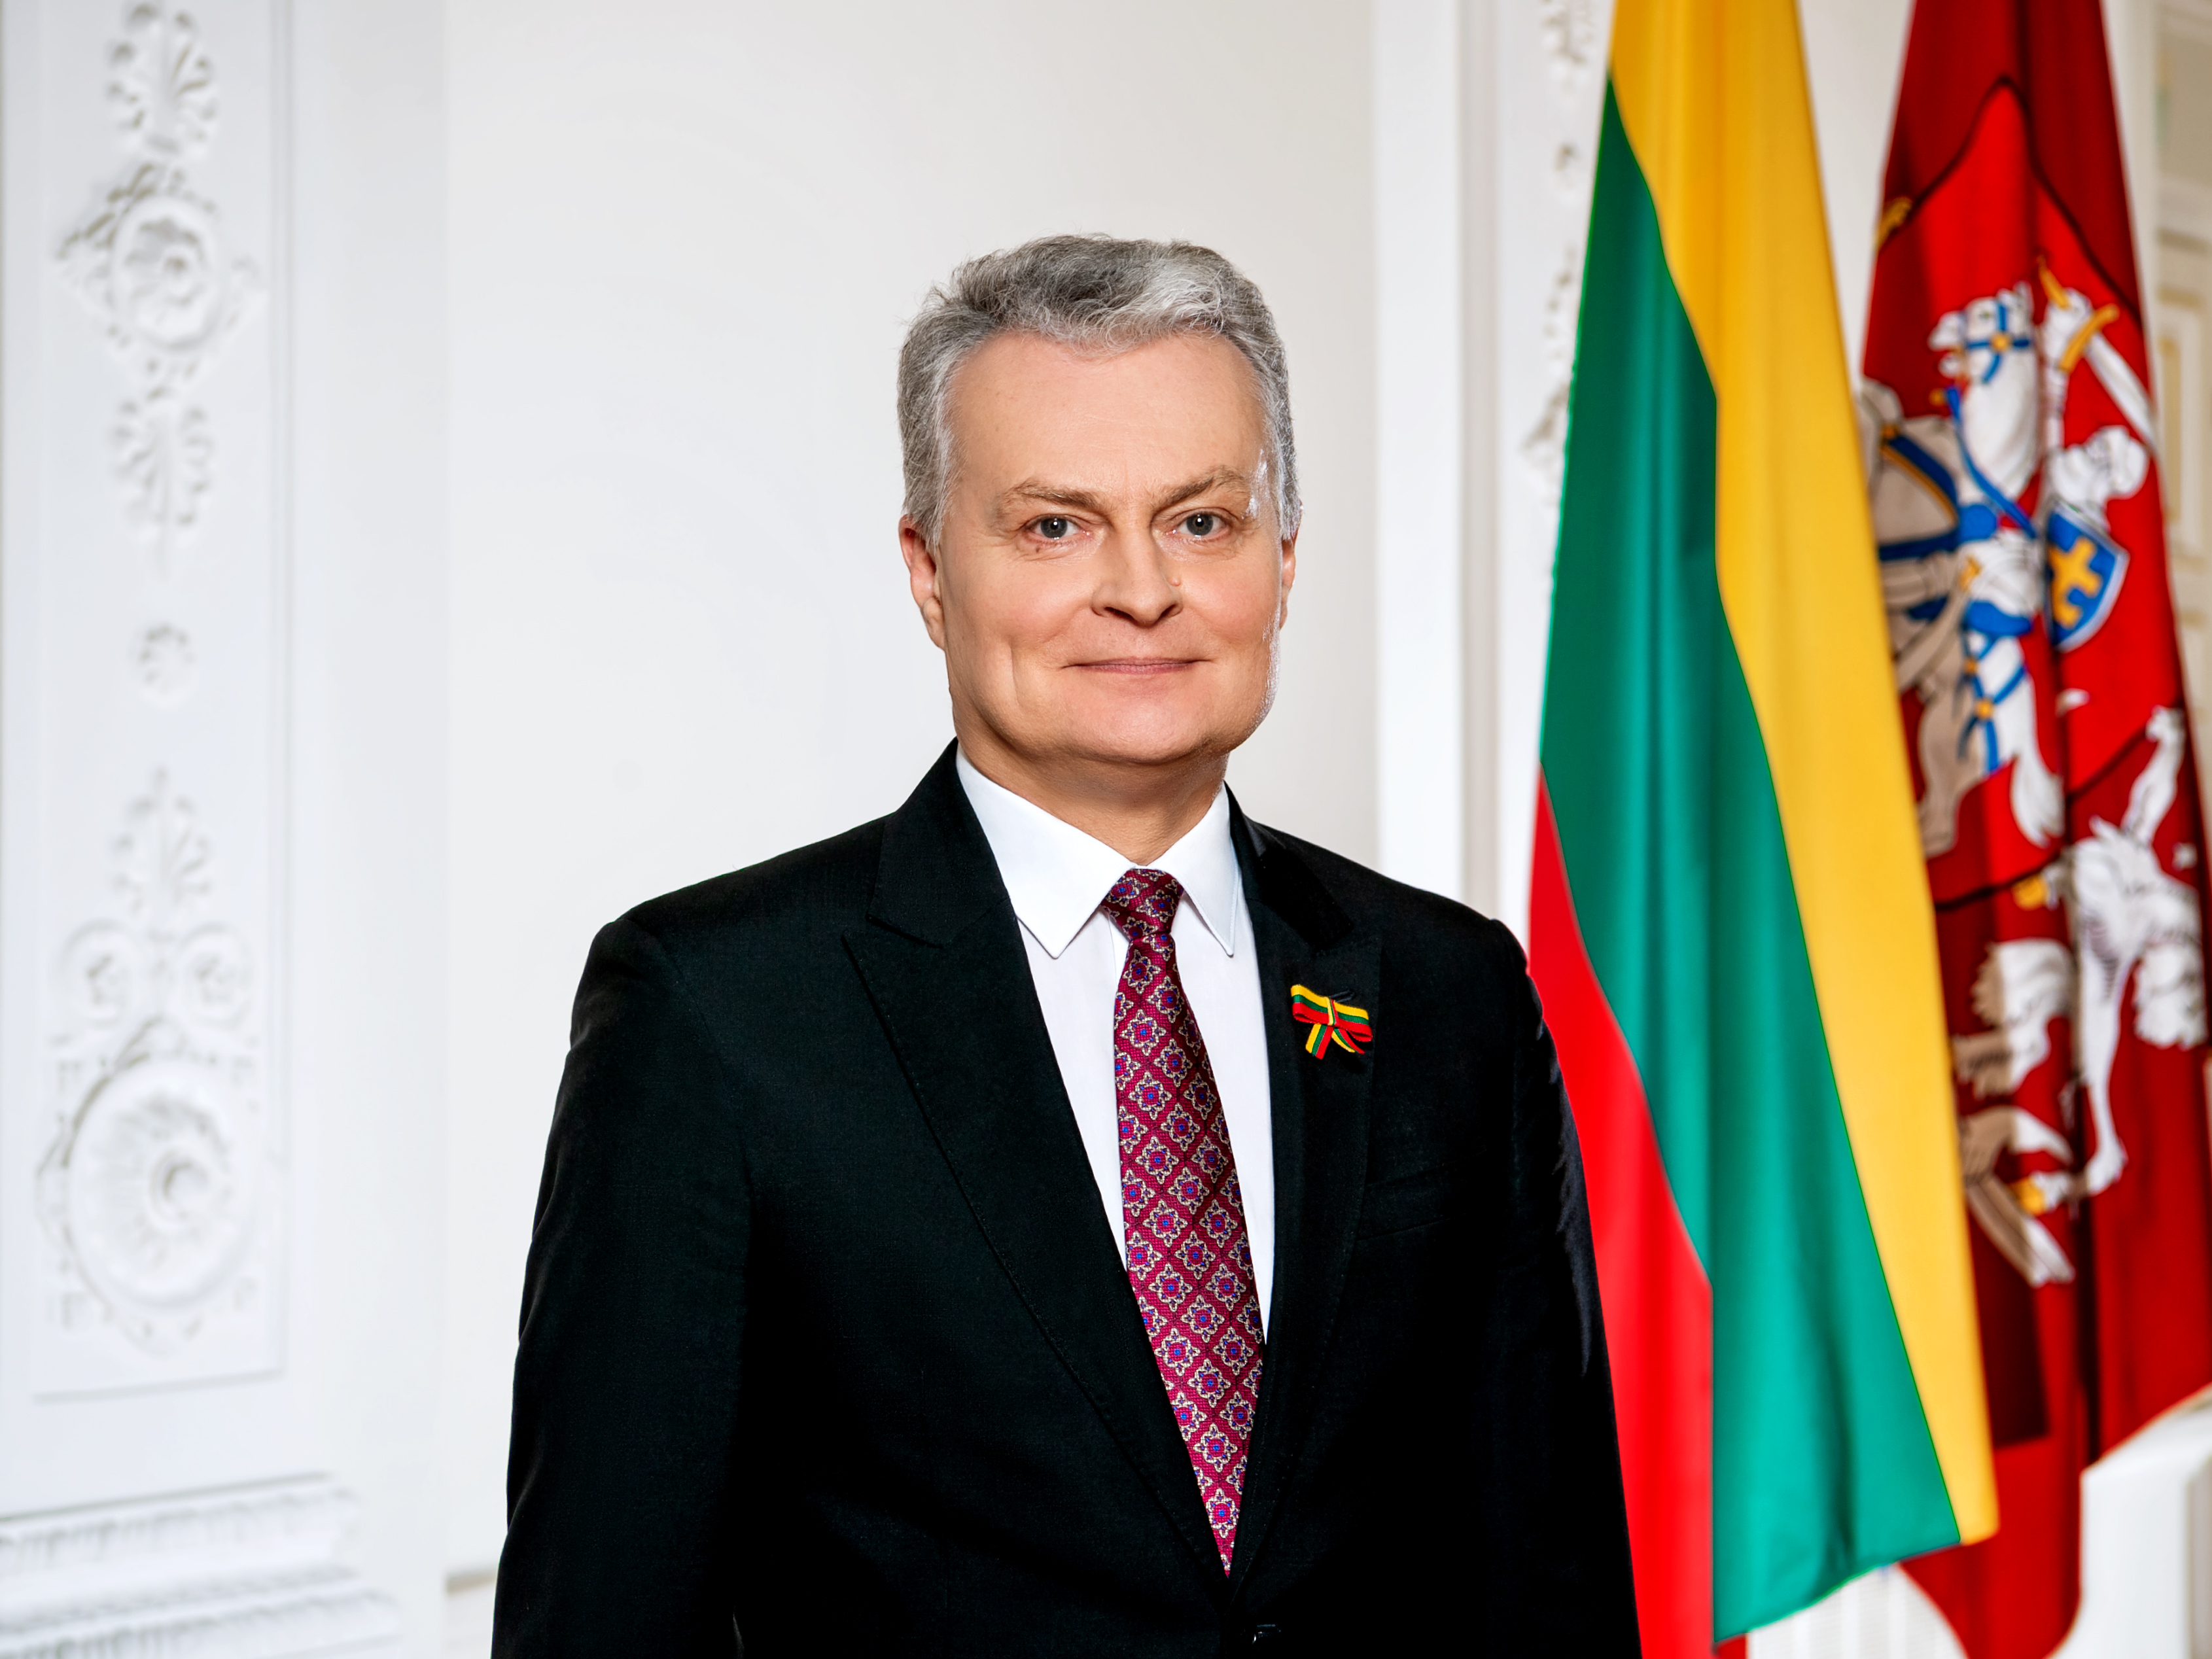 Lietuvos Respublikos Prezidento Gitano Nausėdos sveikinimas Kovo 11-osios proga